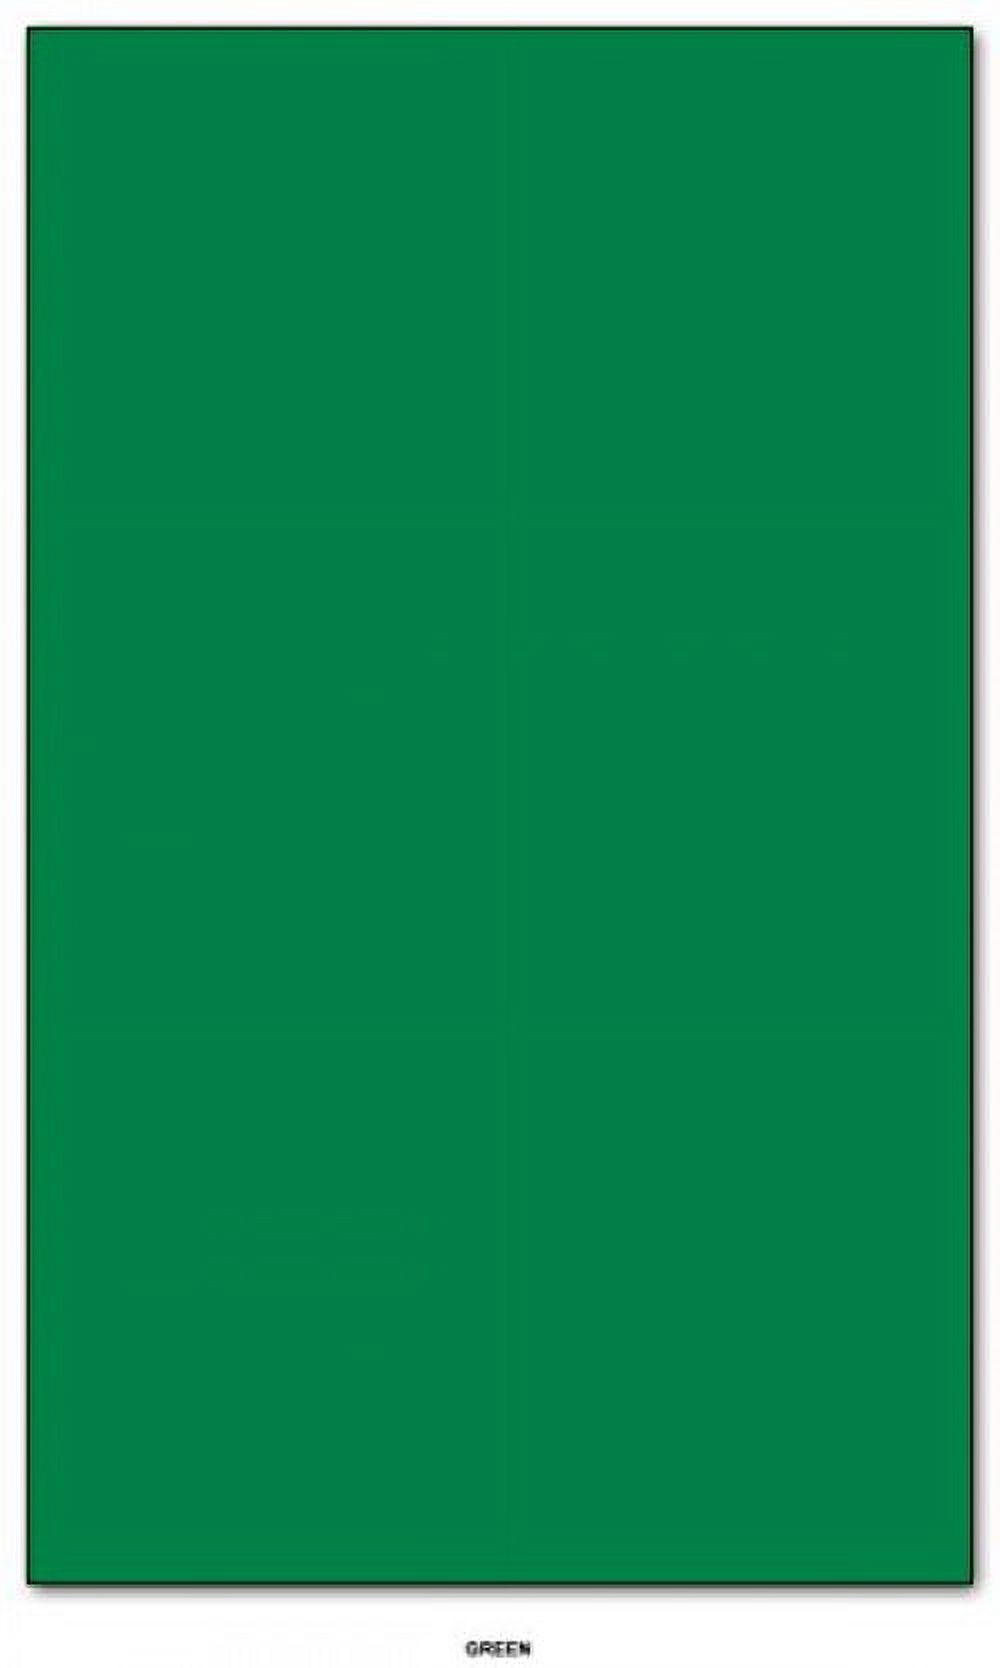 Mohawk BriteHue Bright Color Paper | Green | 24lb Bond / 60lb Text Paper | 8.5" x 14" (Legal Size) | 100 Sheets Per Pack - image 1 of 2